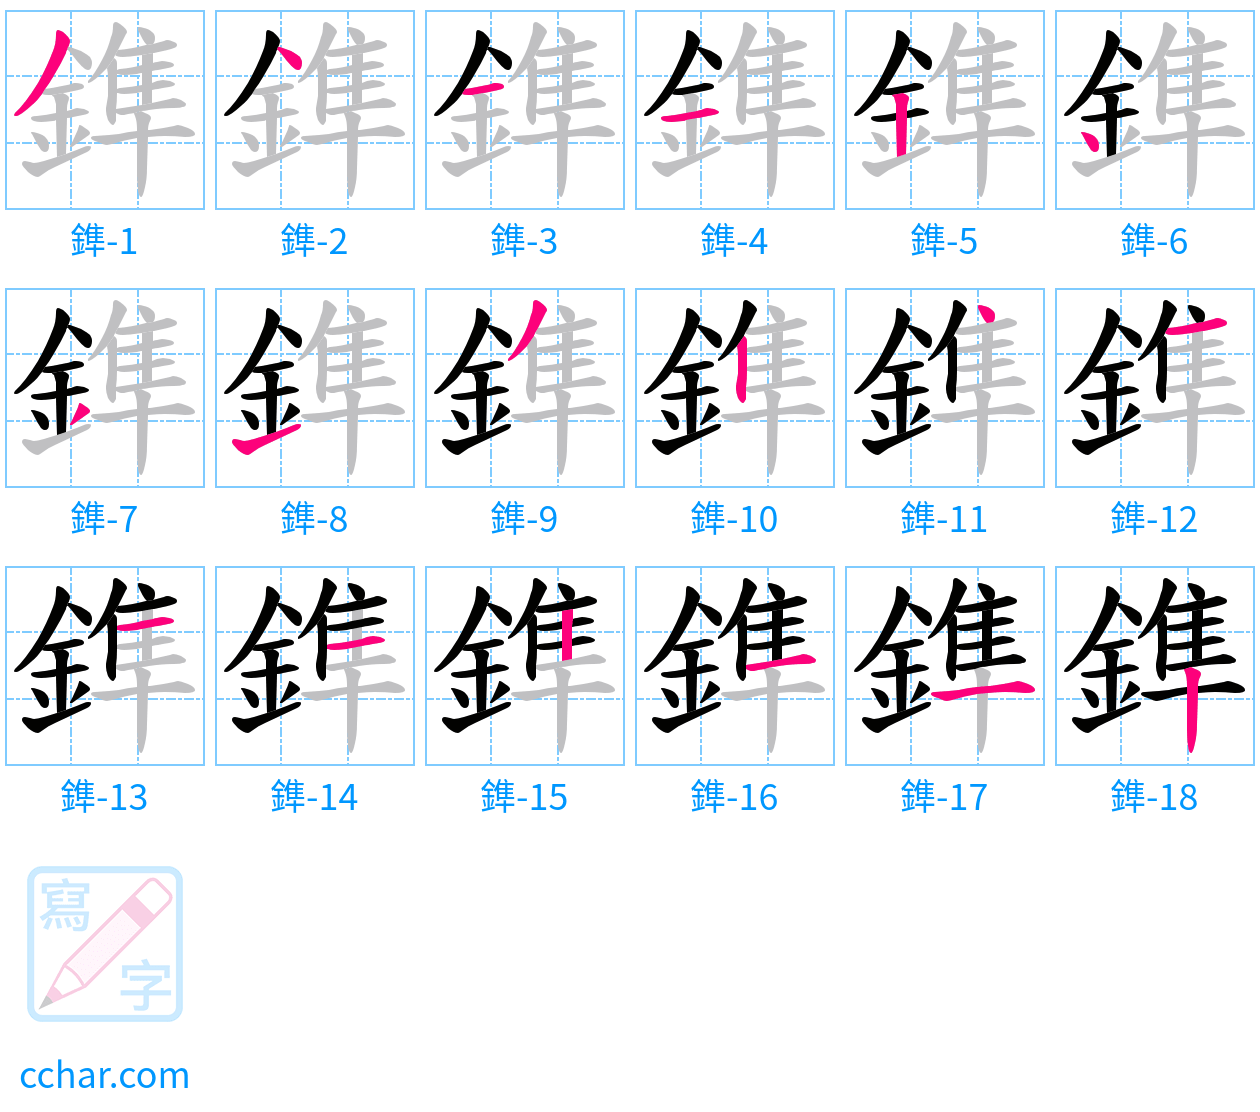 鎨 stroke order step-by-step diagram